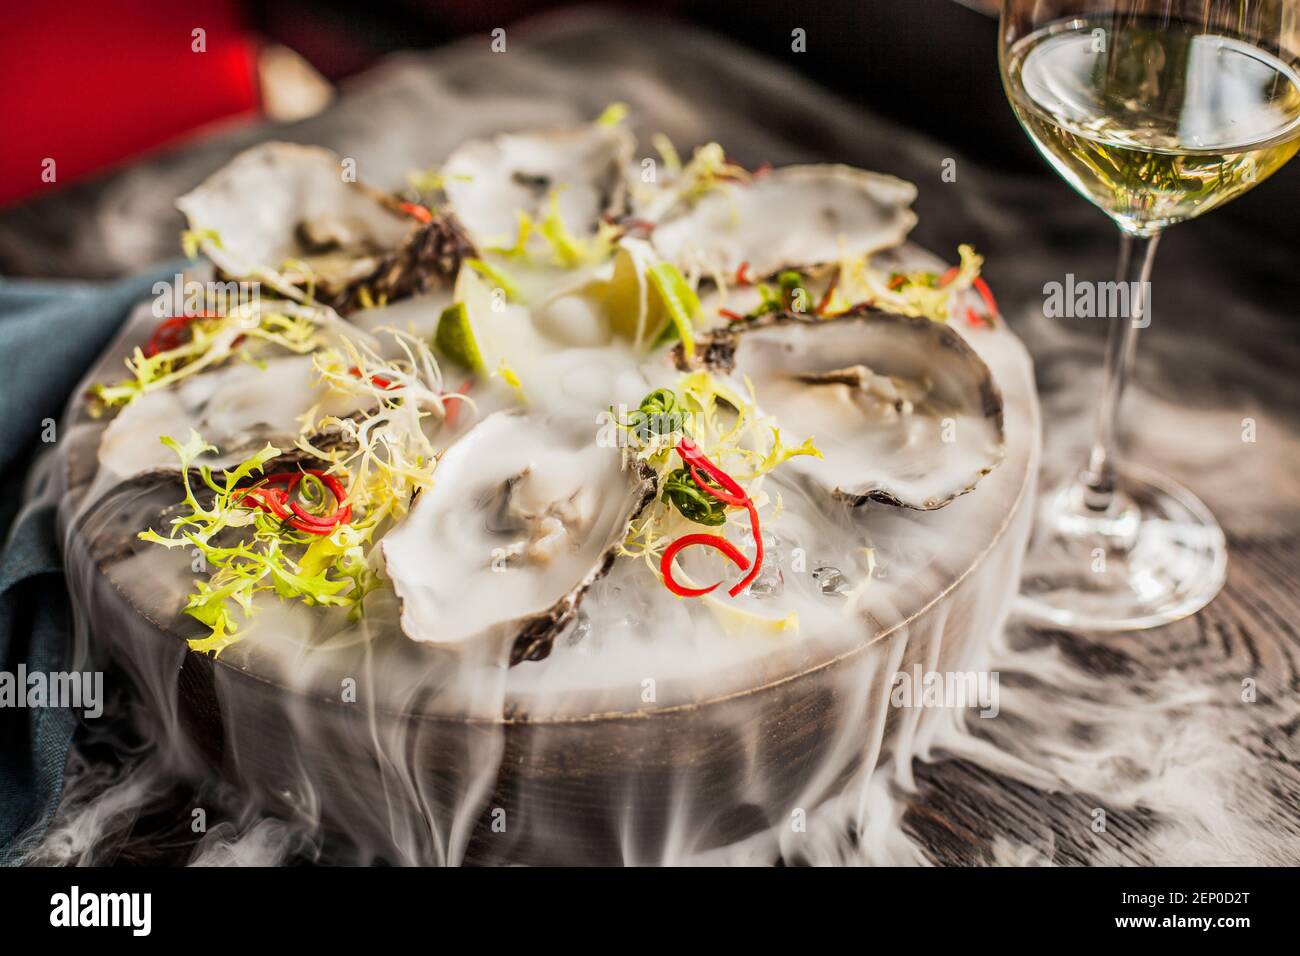 Eine Platte mit Austern in Rauch und ein Glas Weißwein in der Nähe Stockfoto